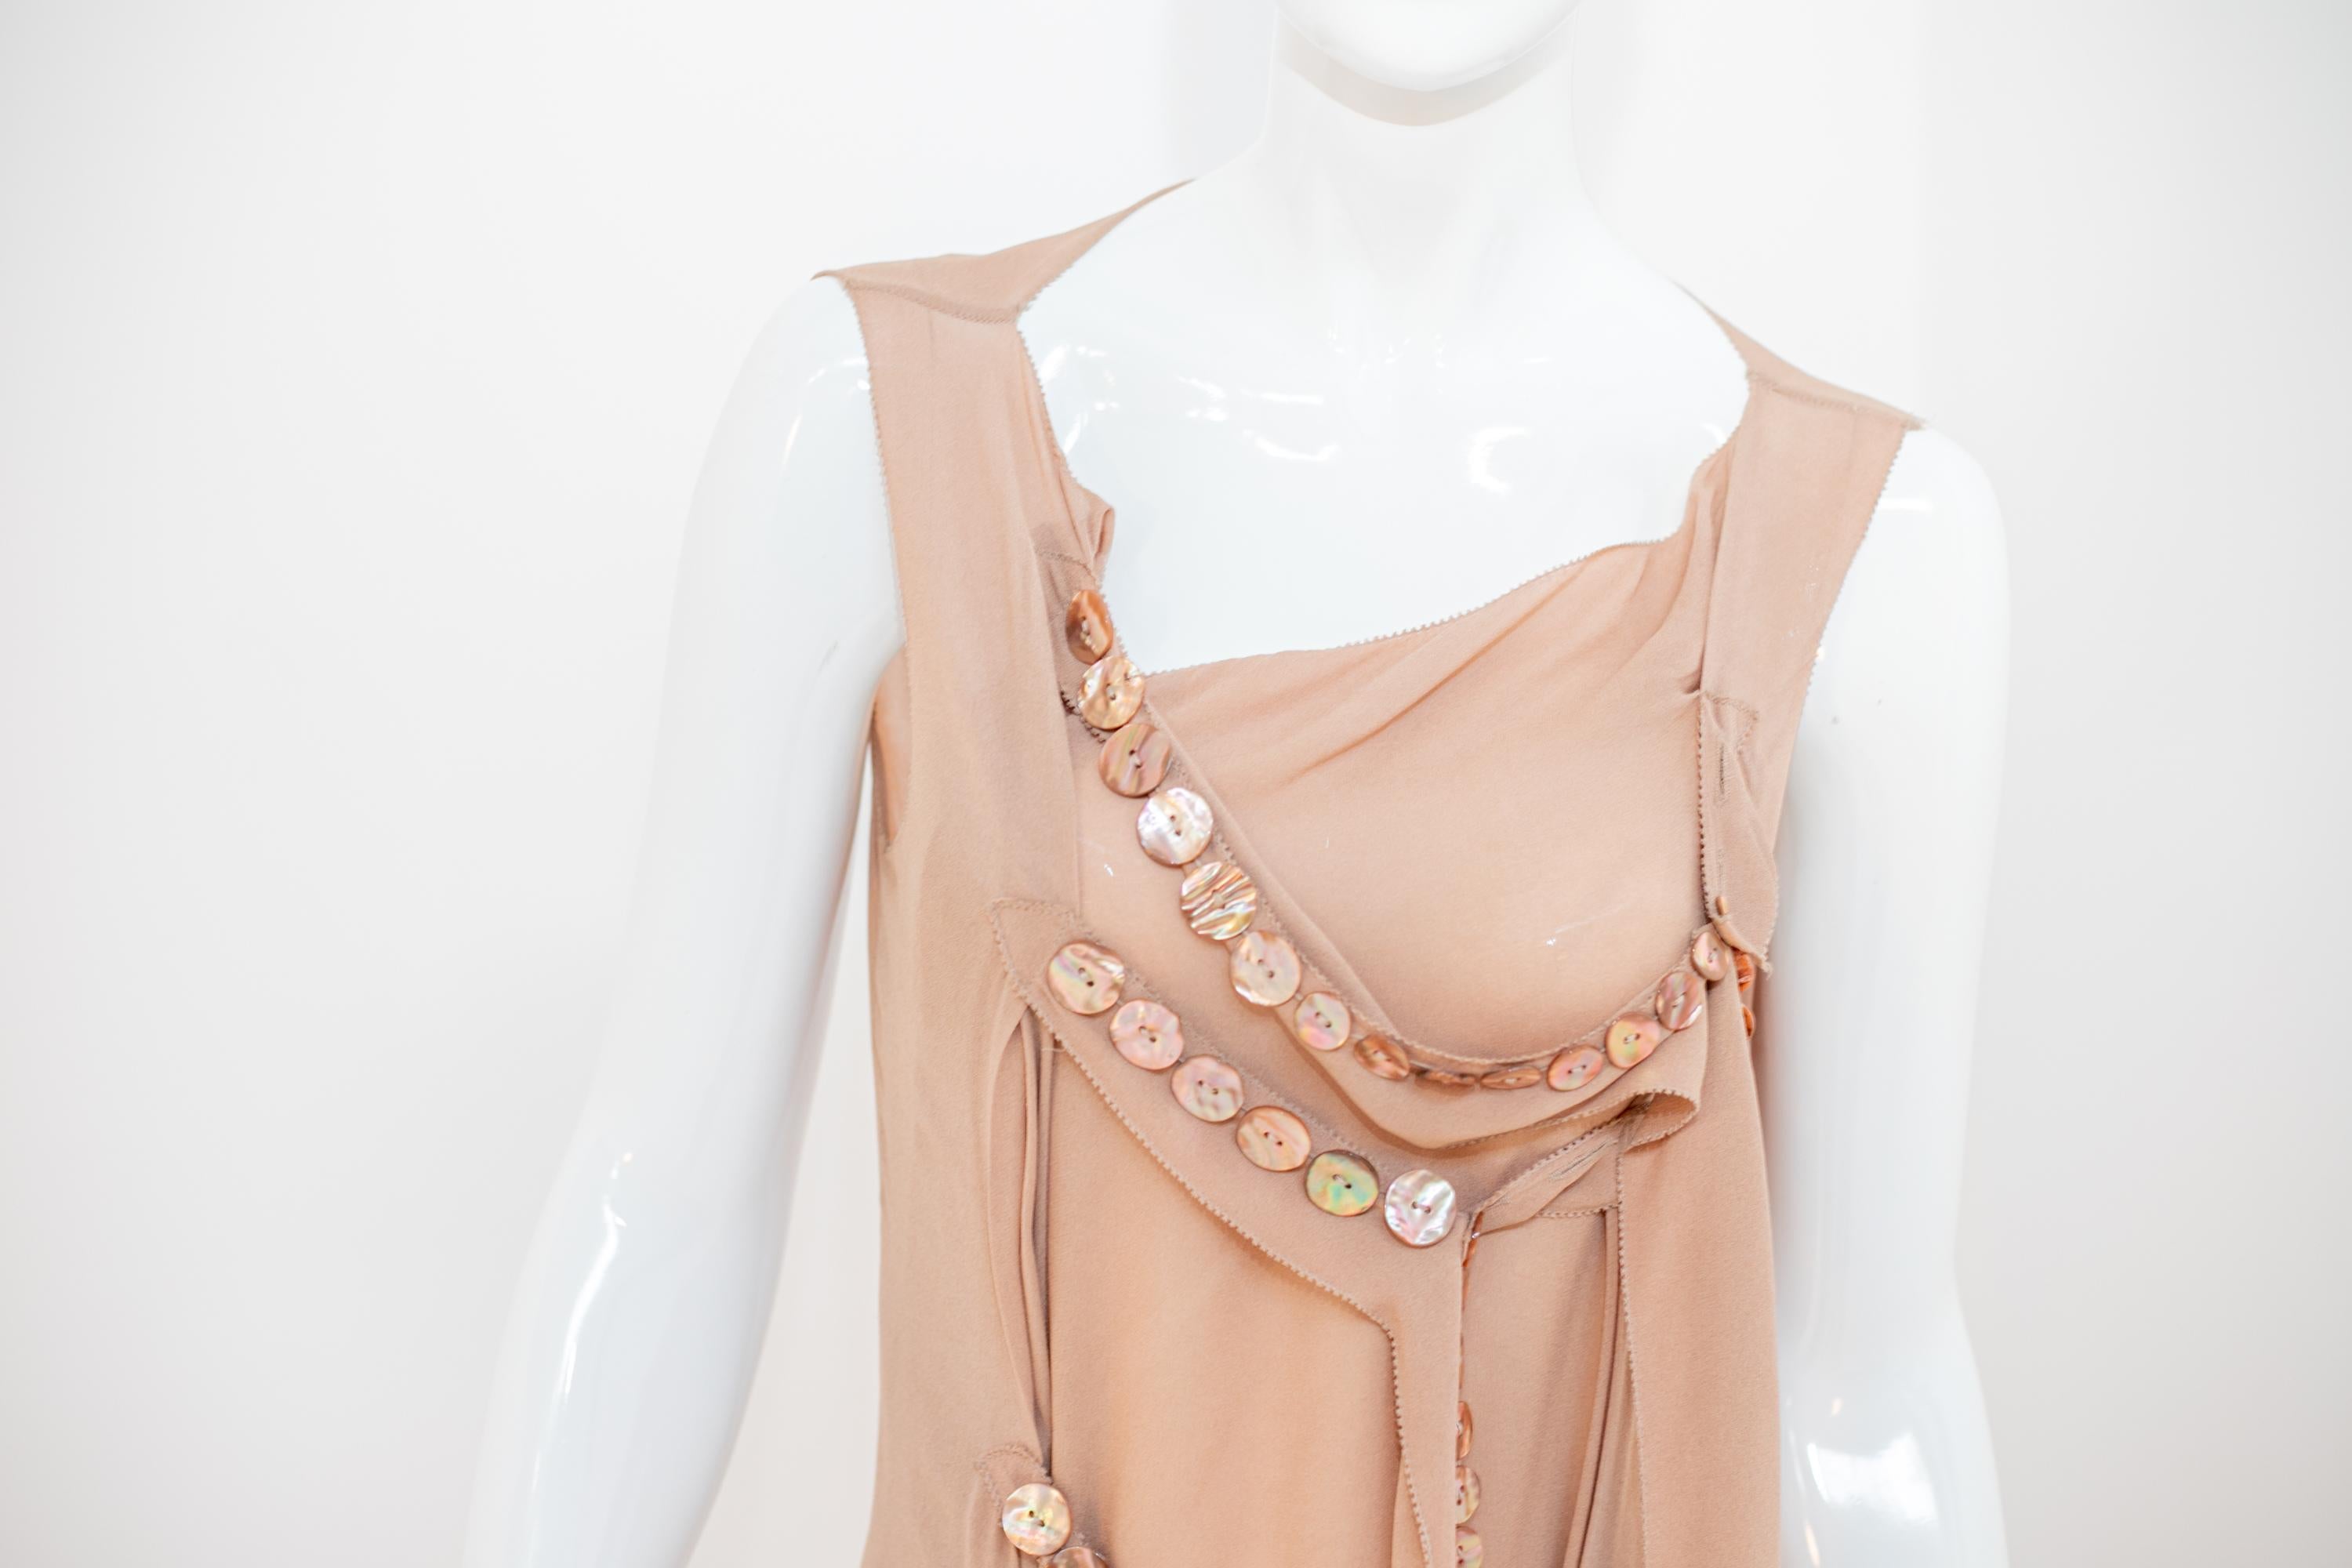 Wunderschönes langes Abendkleid, entworfen von dem großen Jean Paul Gaultier in den 1990er Jahren. Das Kleid hat noch das Originaletikett.
Das Kleid besteht aus einem Mieder mit zwei weichen Trägern, die bis zu den Knöcheln herabreichen und zwei mit